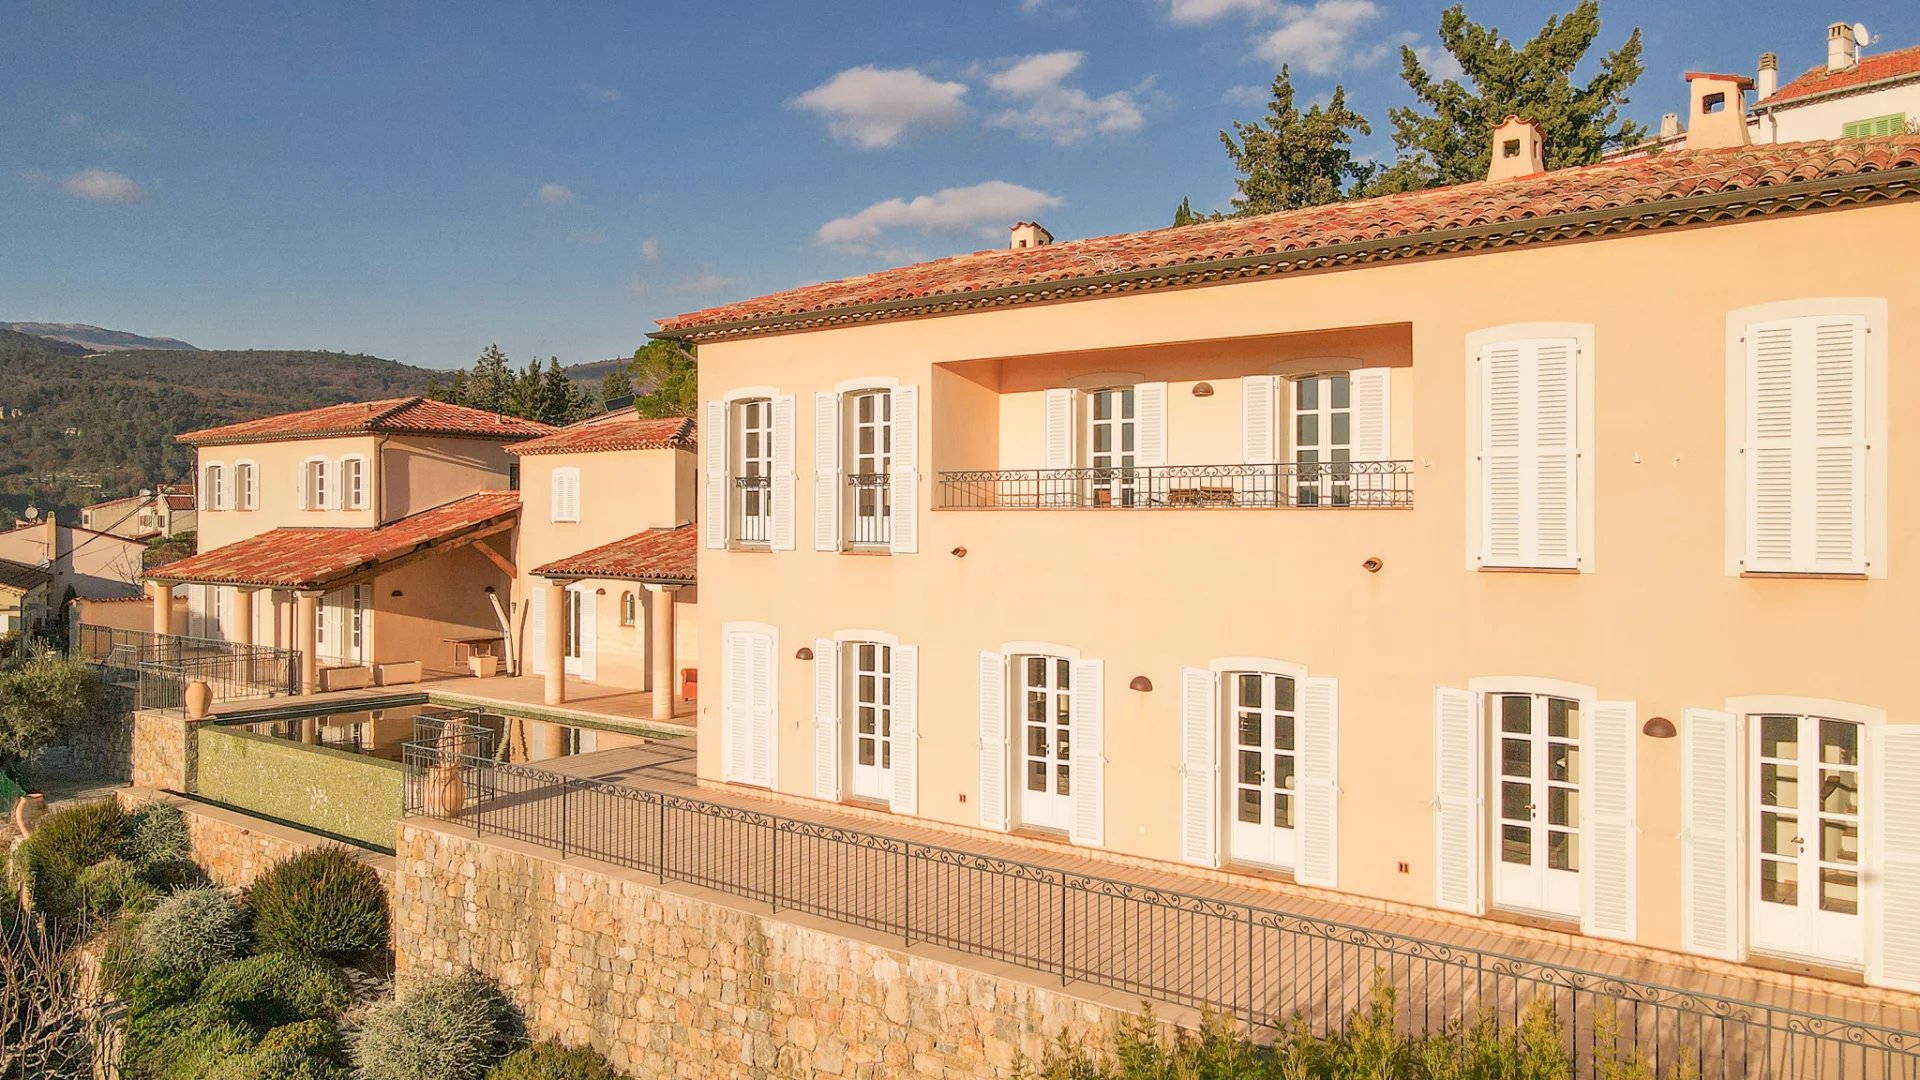 Provence grote veilige dorps villa met zwembad